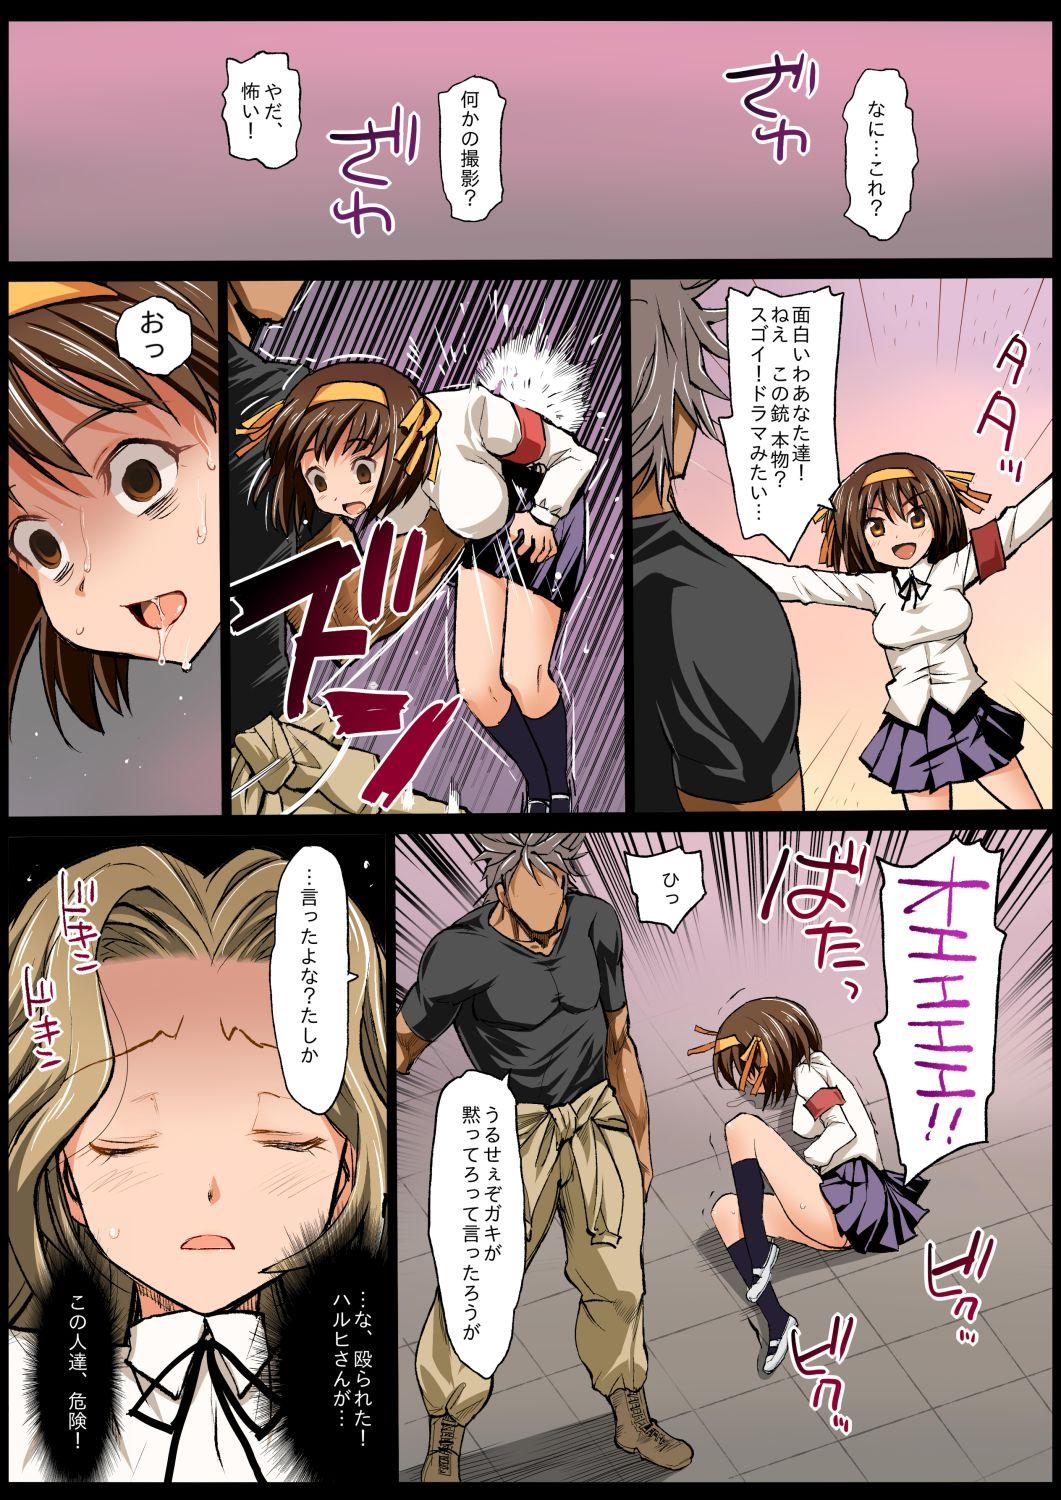 Ruiva Saint Helena Gakuen - Code geass Strike witches Ichigo mashimaro Ex Girlfriends - Page 7